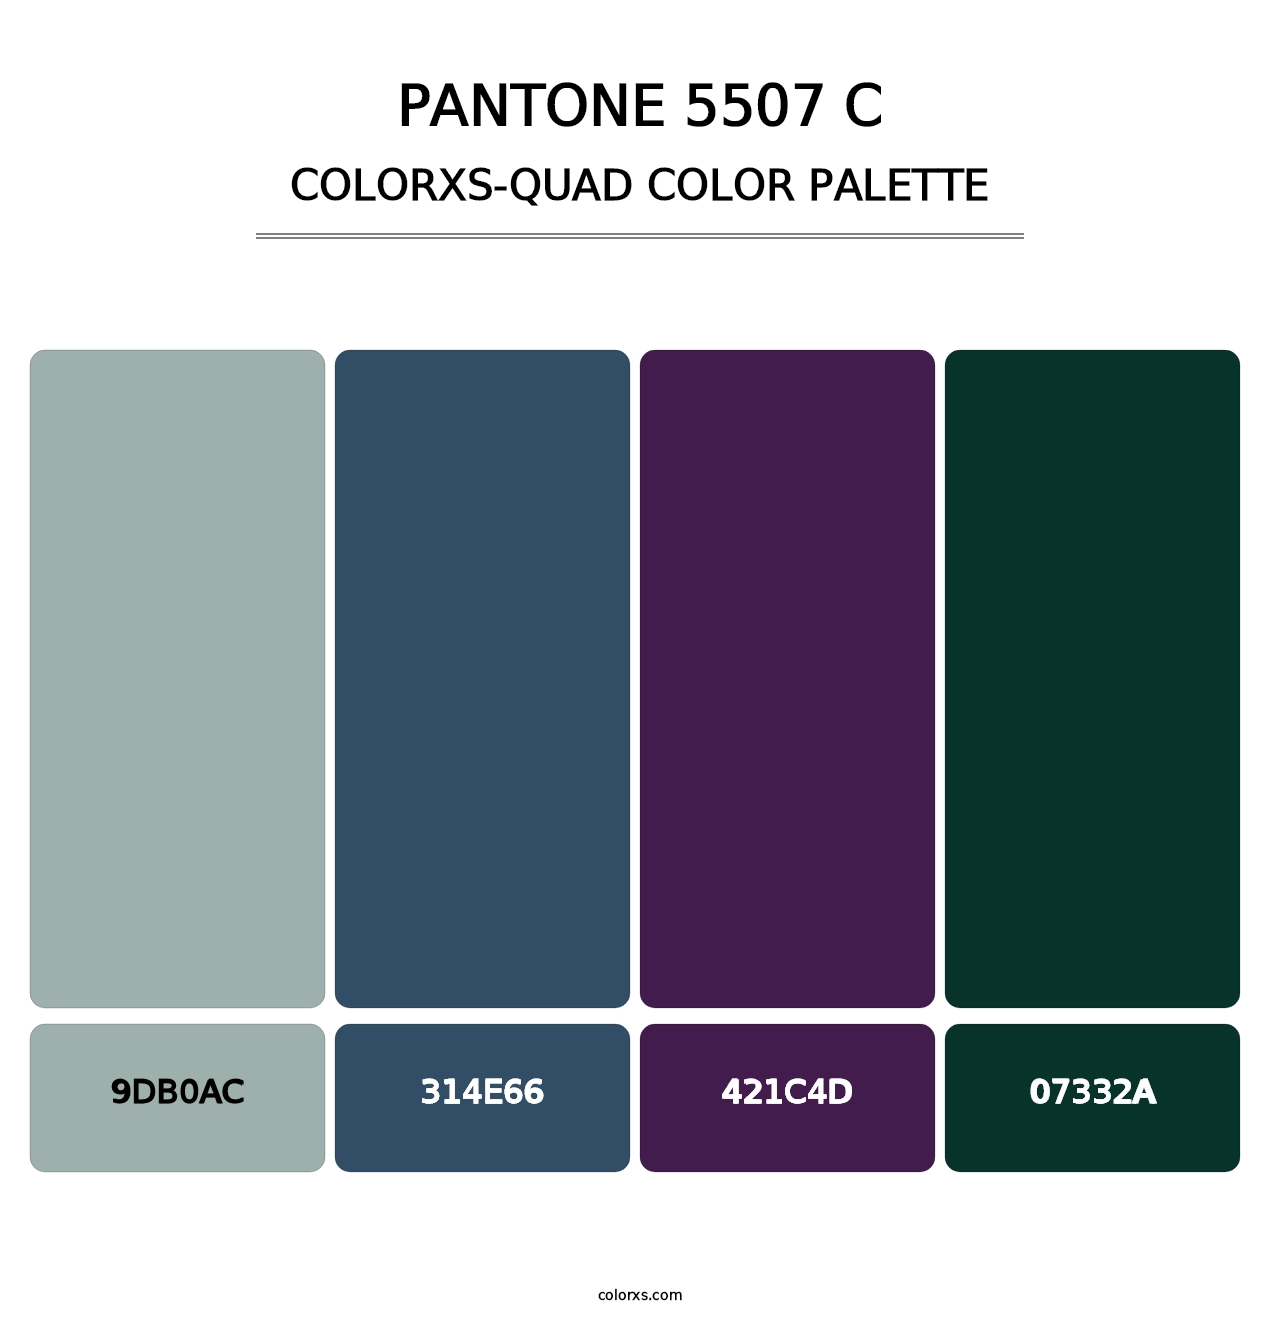 PANTONE 5507 C - Colorxs Quad Palette